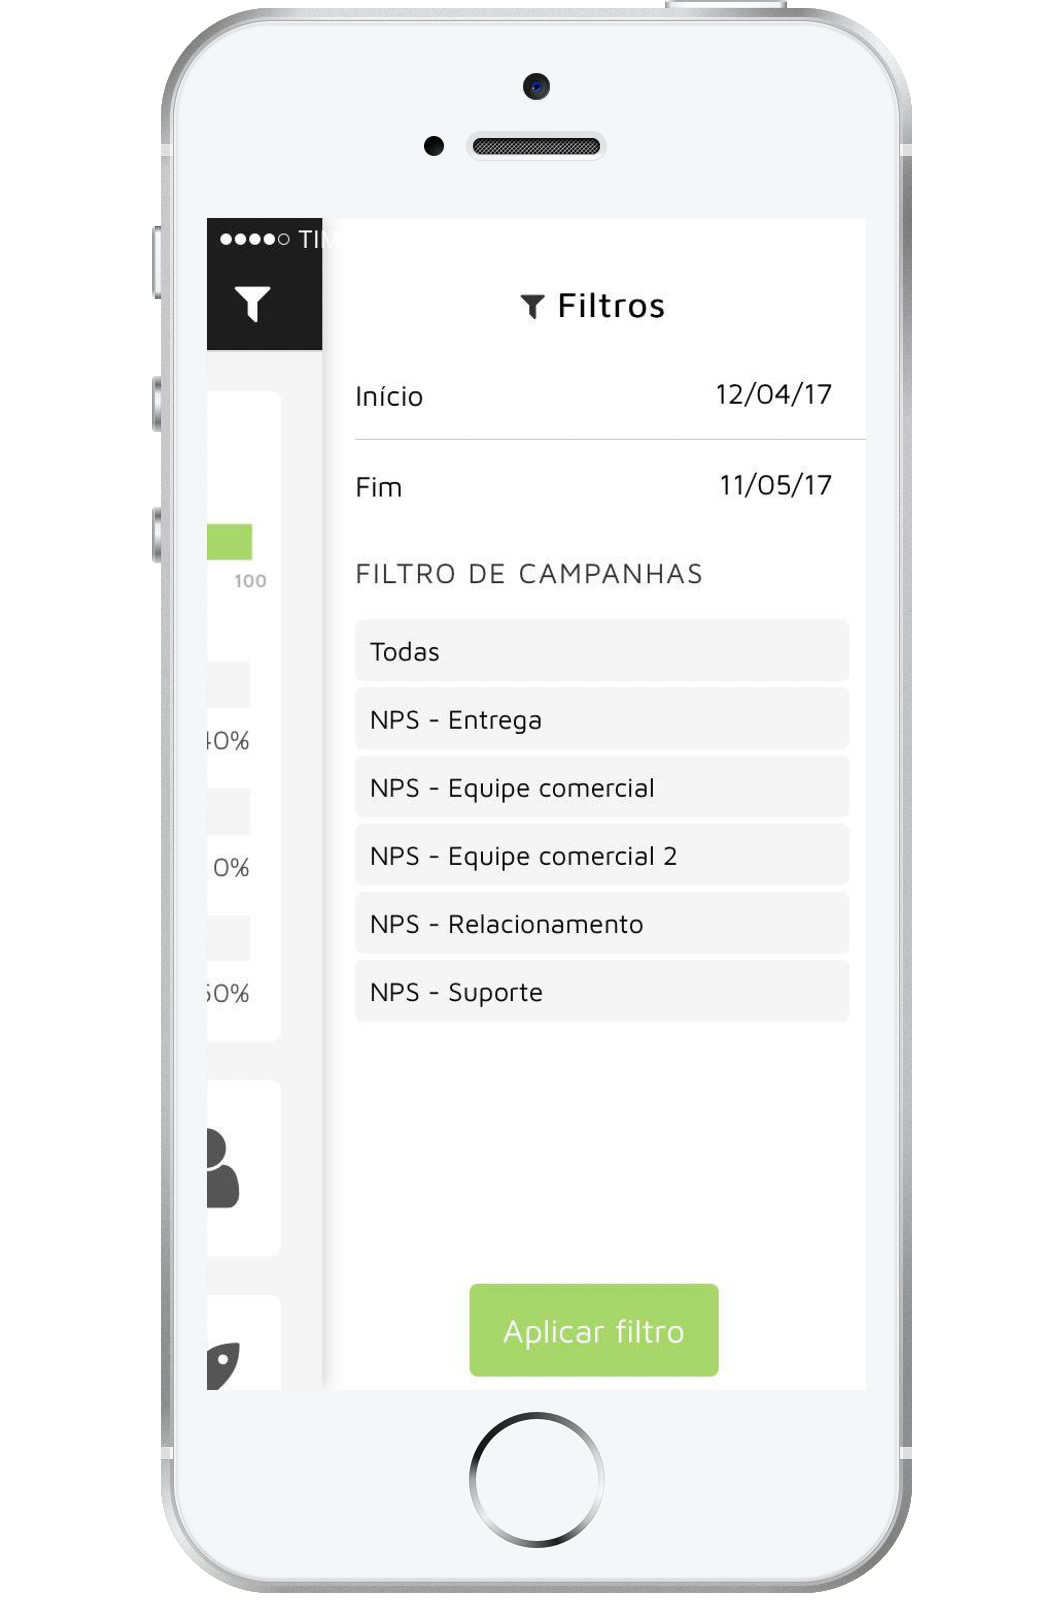 A tela indica onde o clientes pode visualizar a sessão "Filtros" no aplicativo da Tracksale